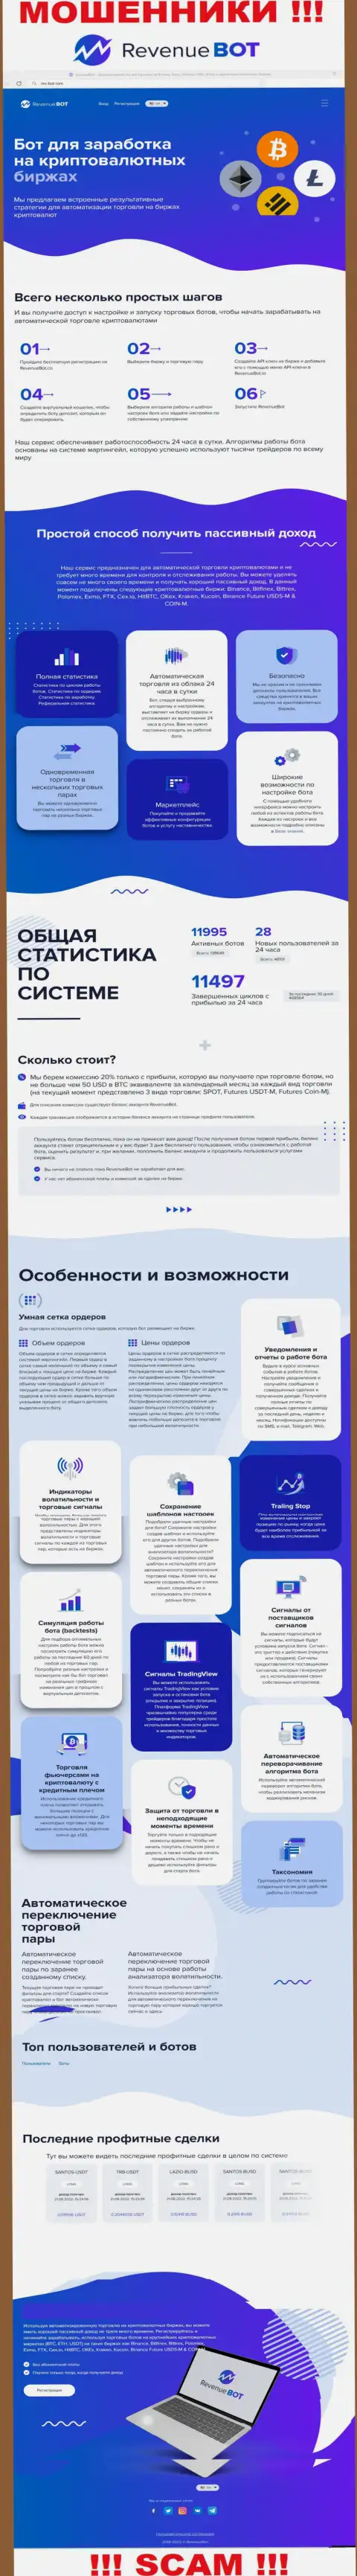 Рев-Бот Ком - это официальный веб-портал шулеров Ревенью БОТ